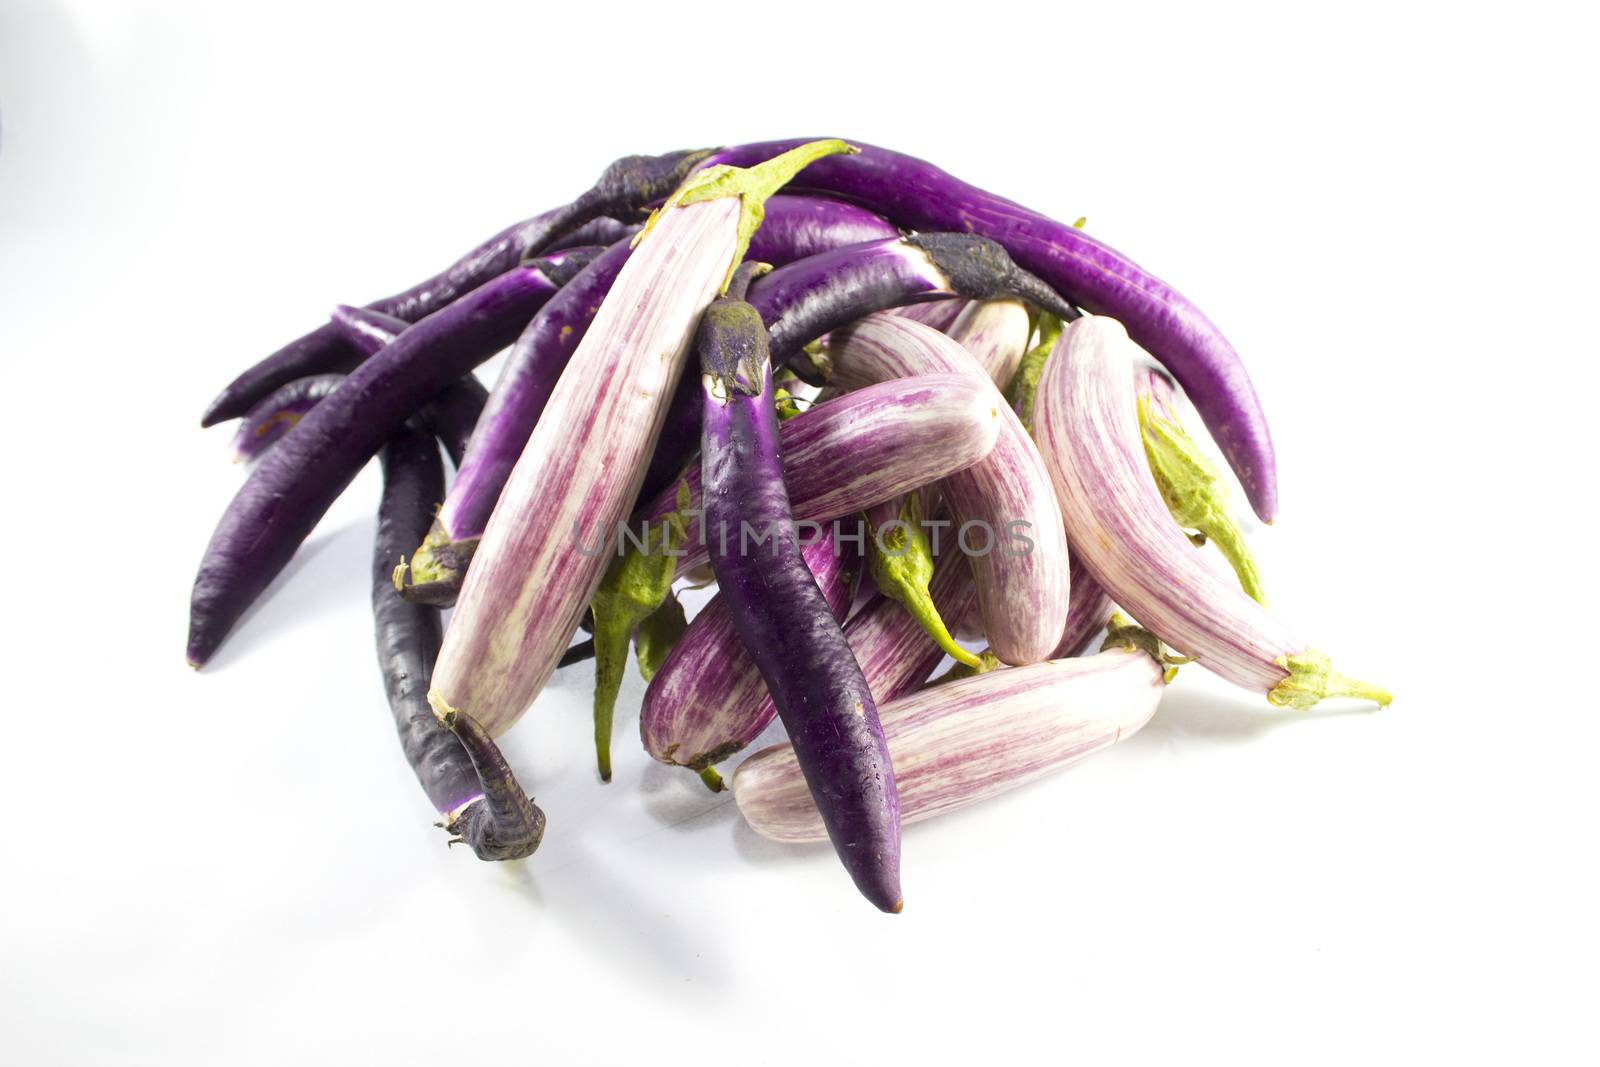 Eggplant by designsstock